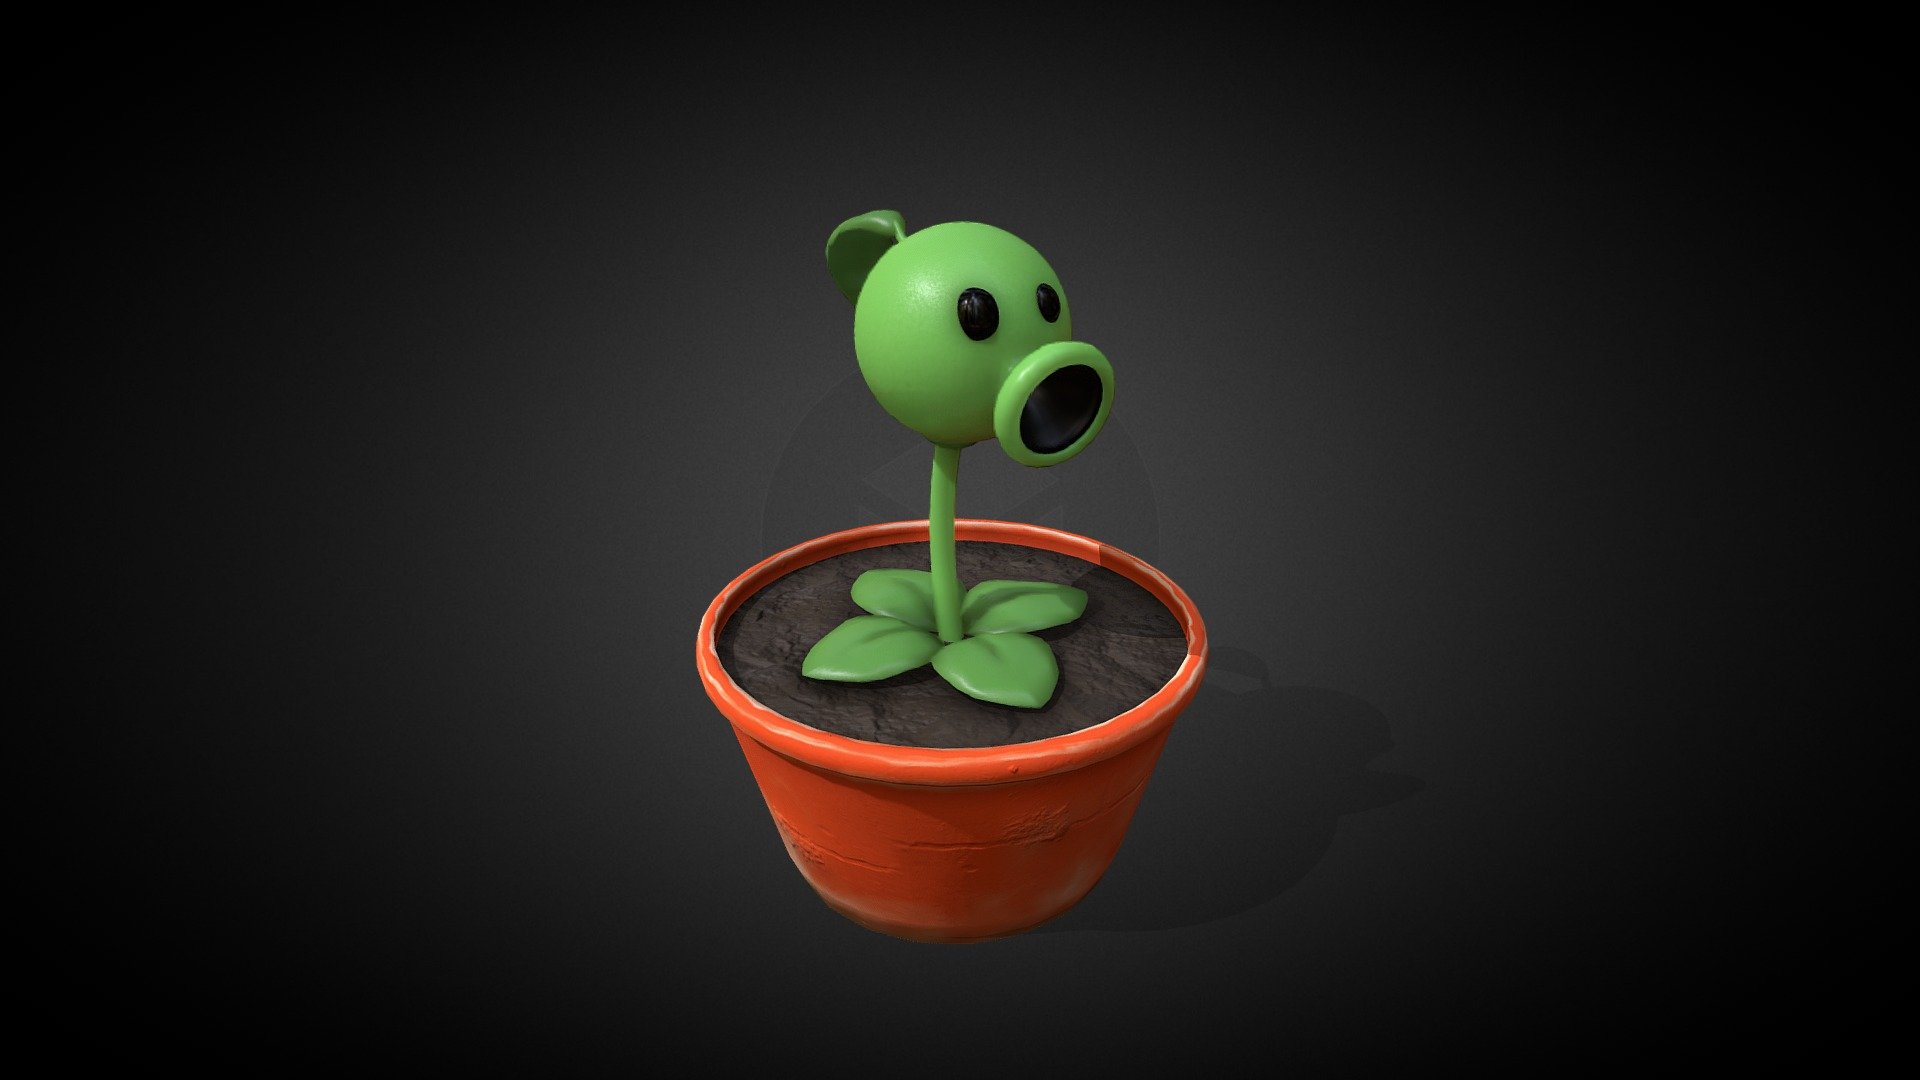 Plantsvszombies 3D models - Sketchfab